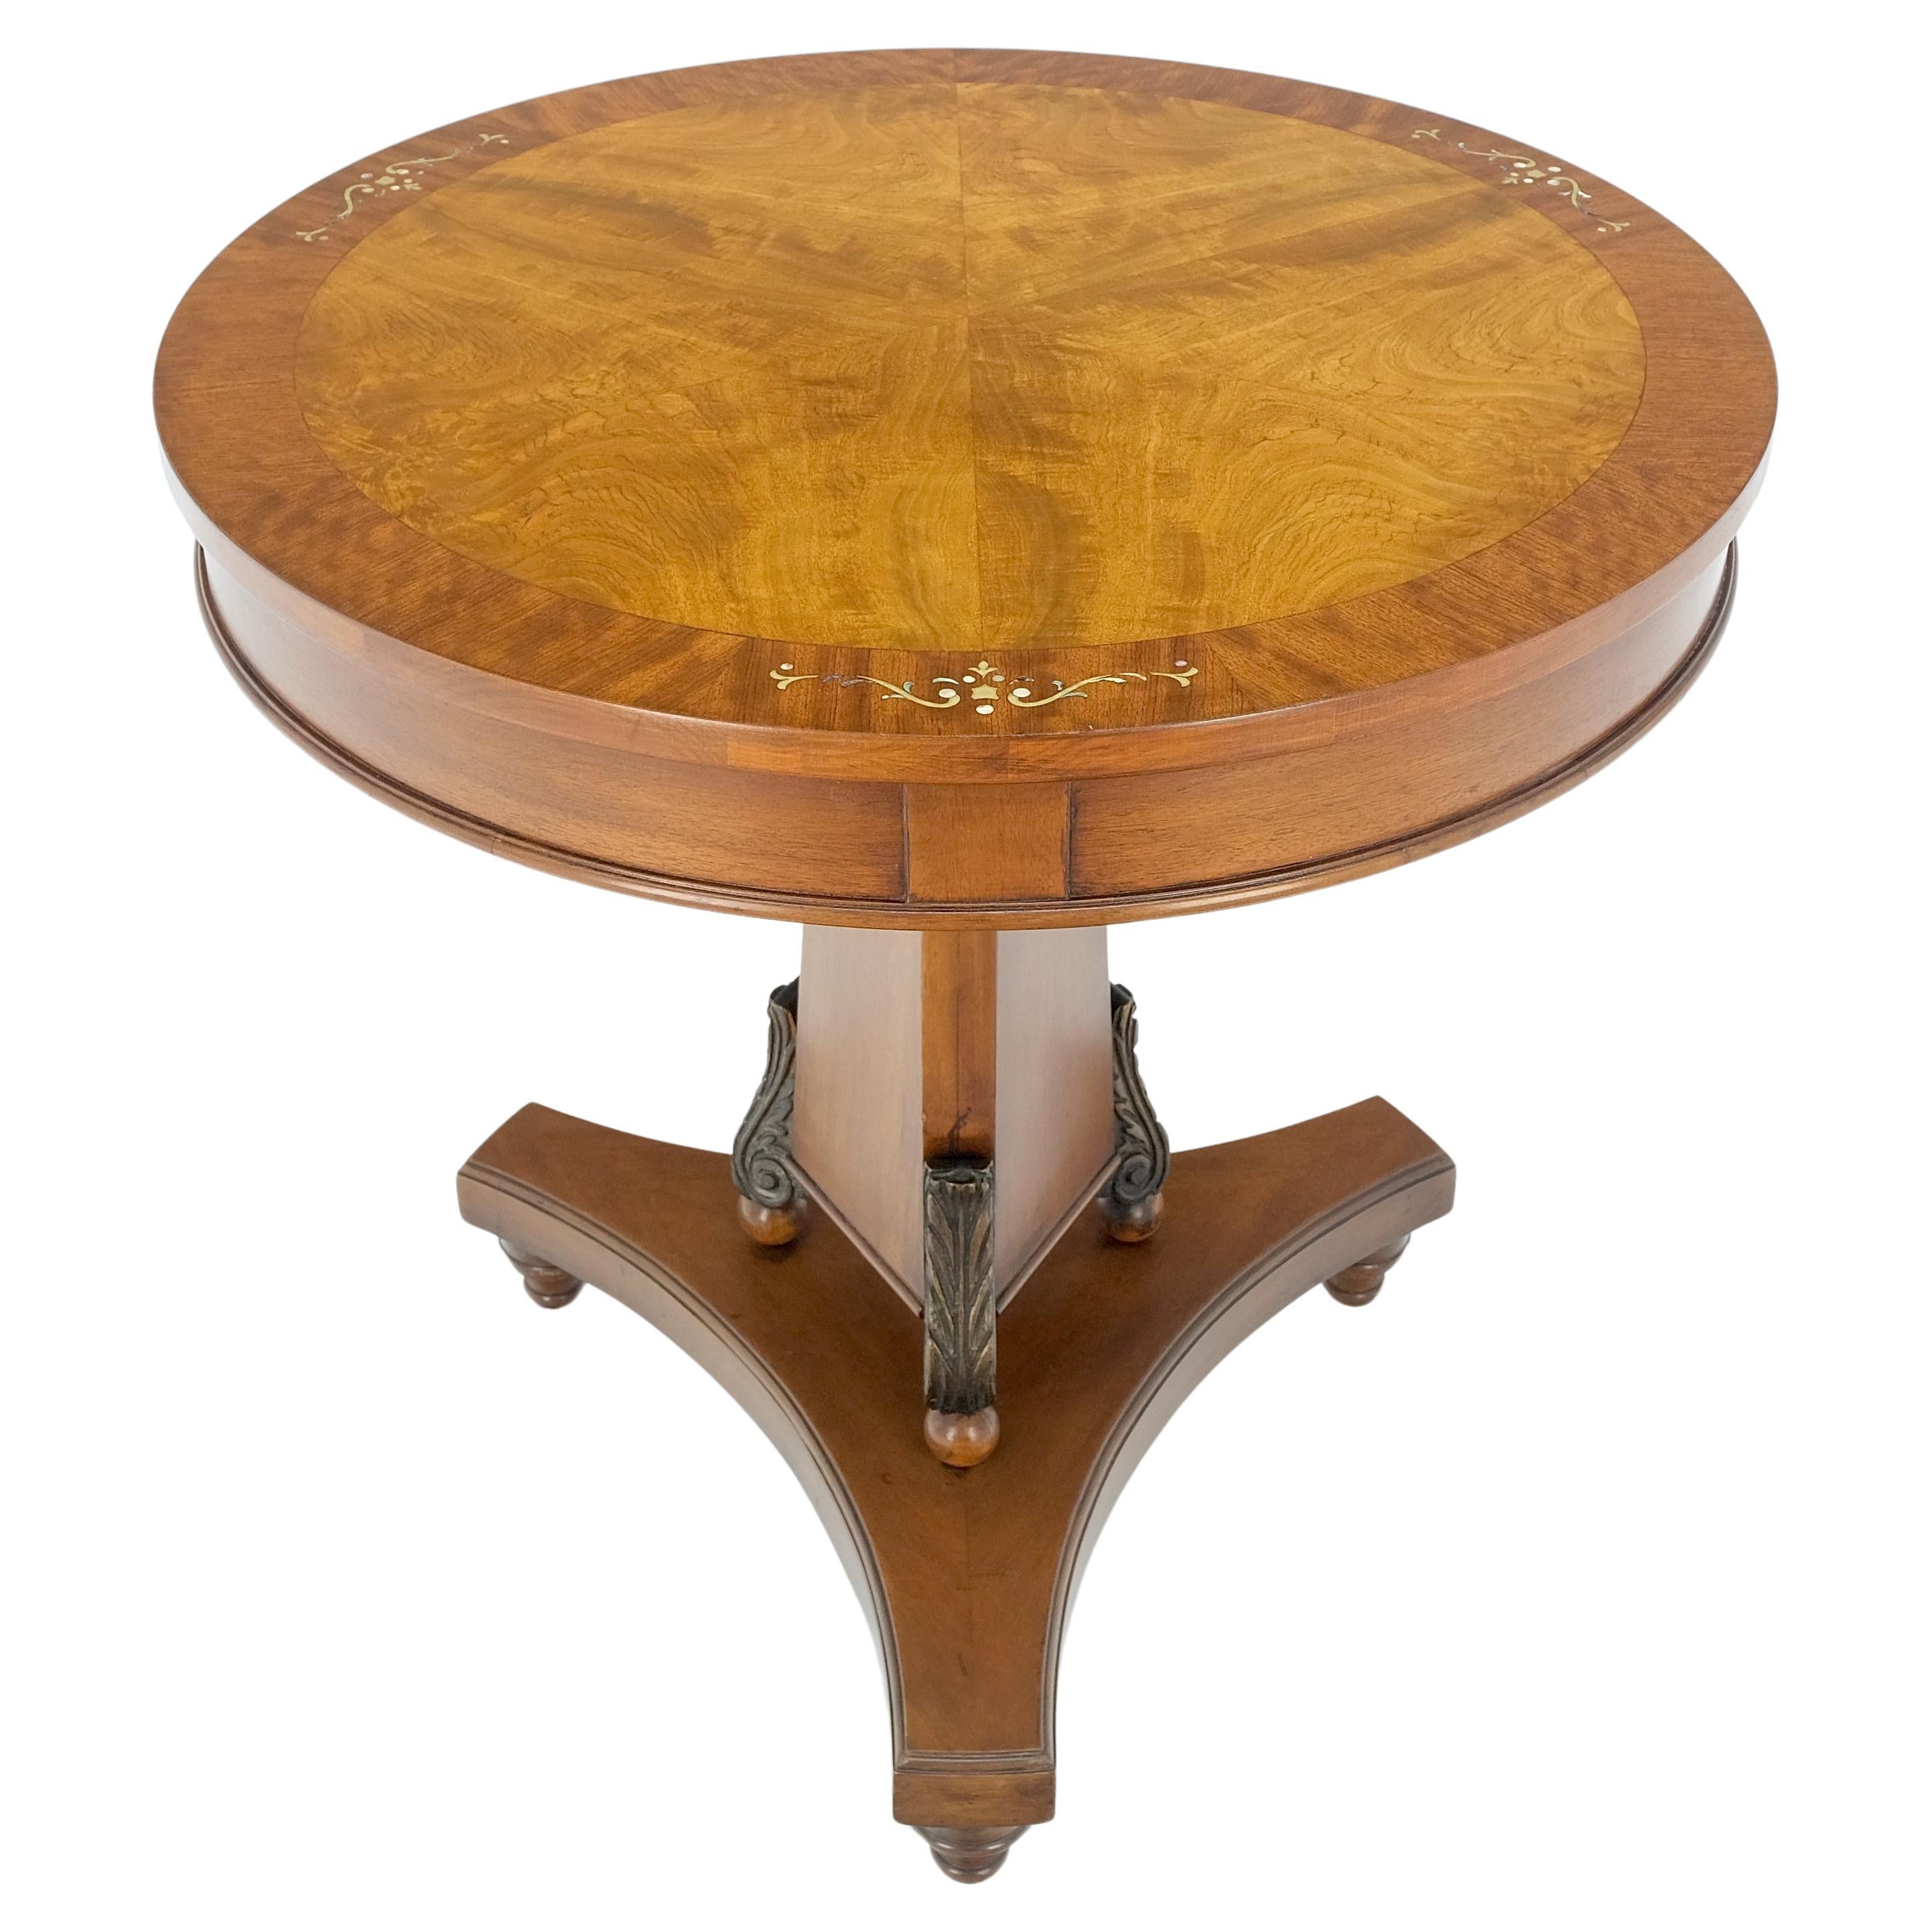 Runder Gueridon-Tisch aus Mahagoni mit Perlmutt-Intarsien im Deko-Stil, MINT